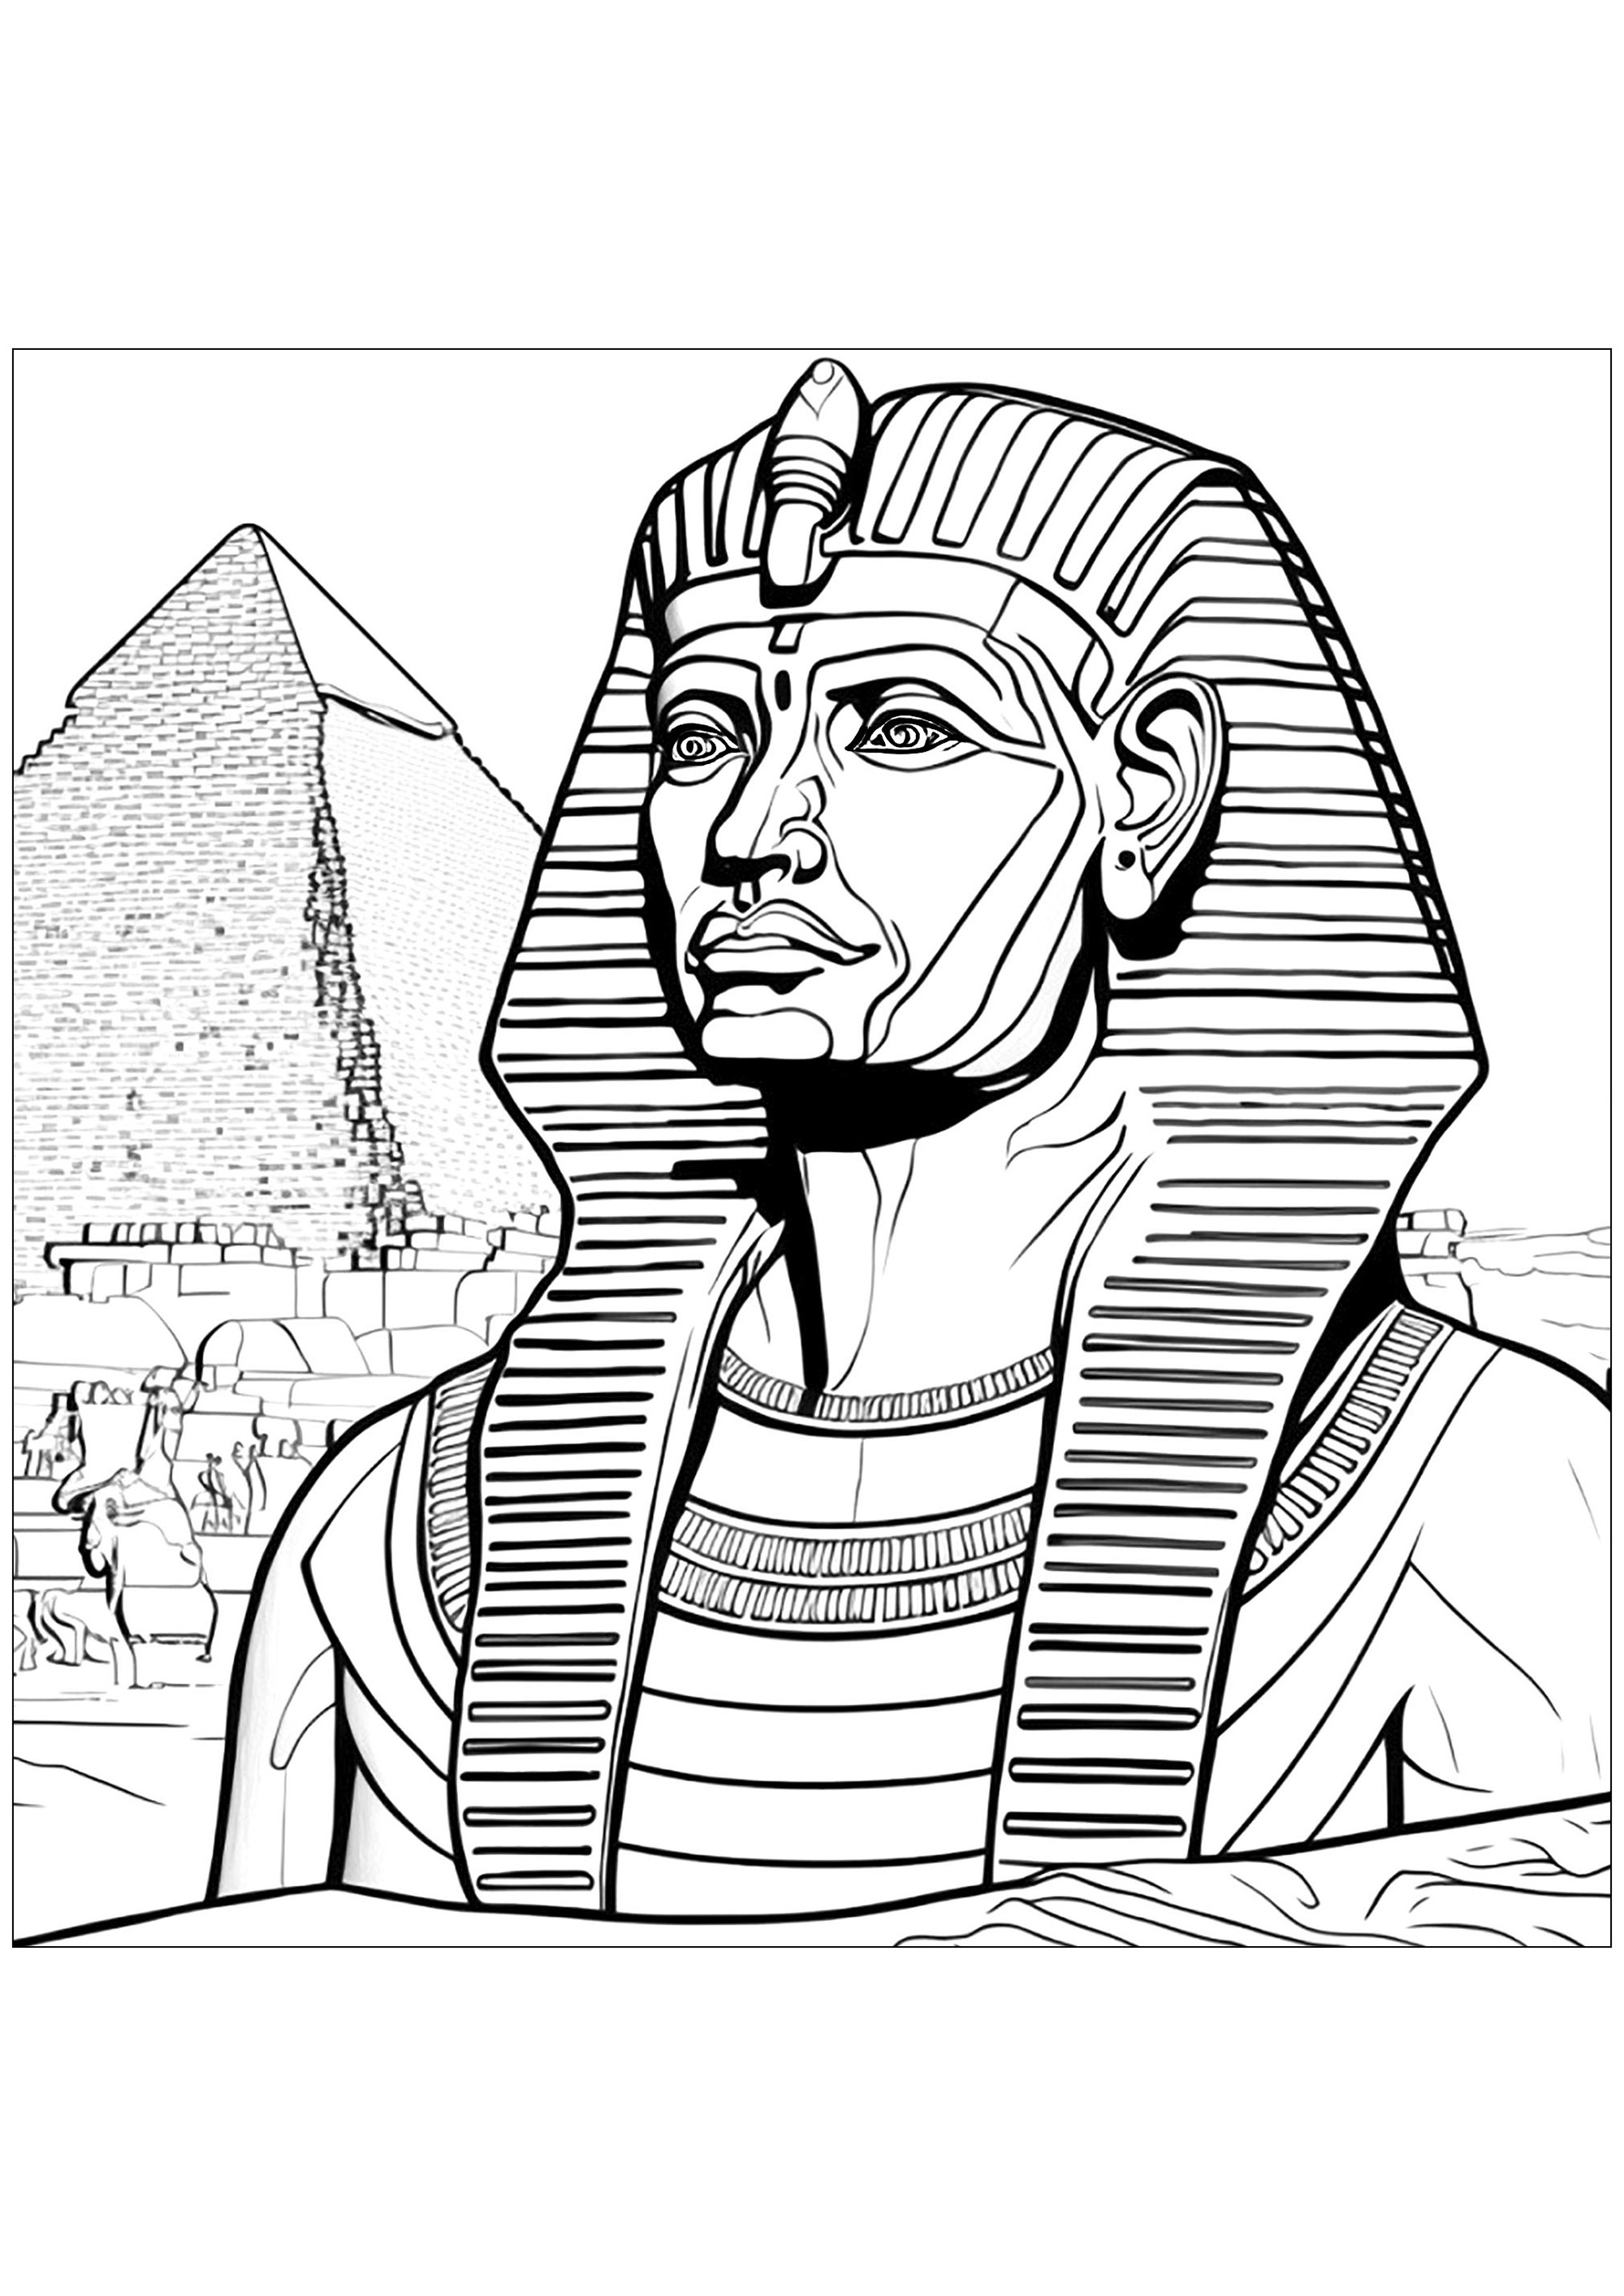 Pharaon devant une pyramide en Égypte. Le pharaon porte sa couronne, qu'il faudra colorier en couleurs éclatantes. Les détails de la pyramide sont très précis et donnent au coloriage un aspect majestueux et réaliste.Ce coloriage est une excellente façon de stimuler l'imagination des enfants et de leur apprendre l'histoire de l'Egypte.